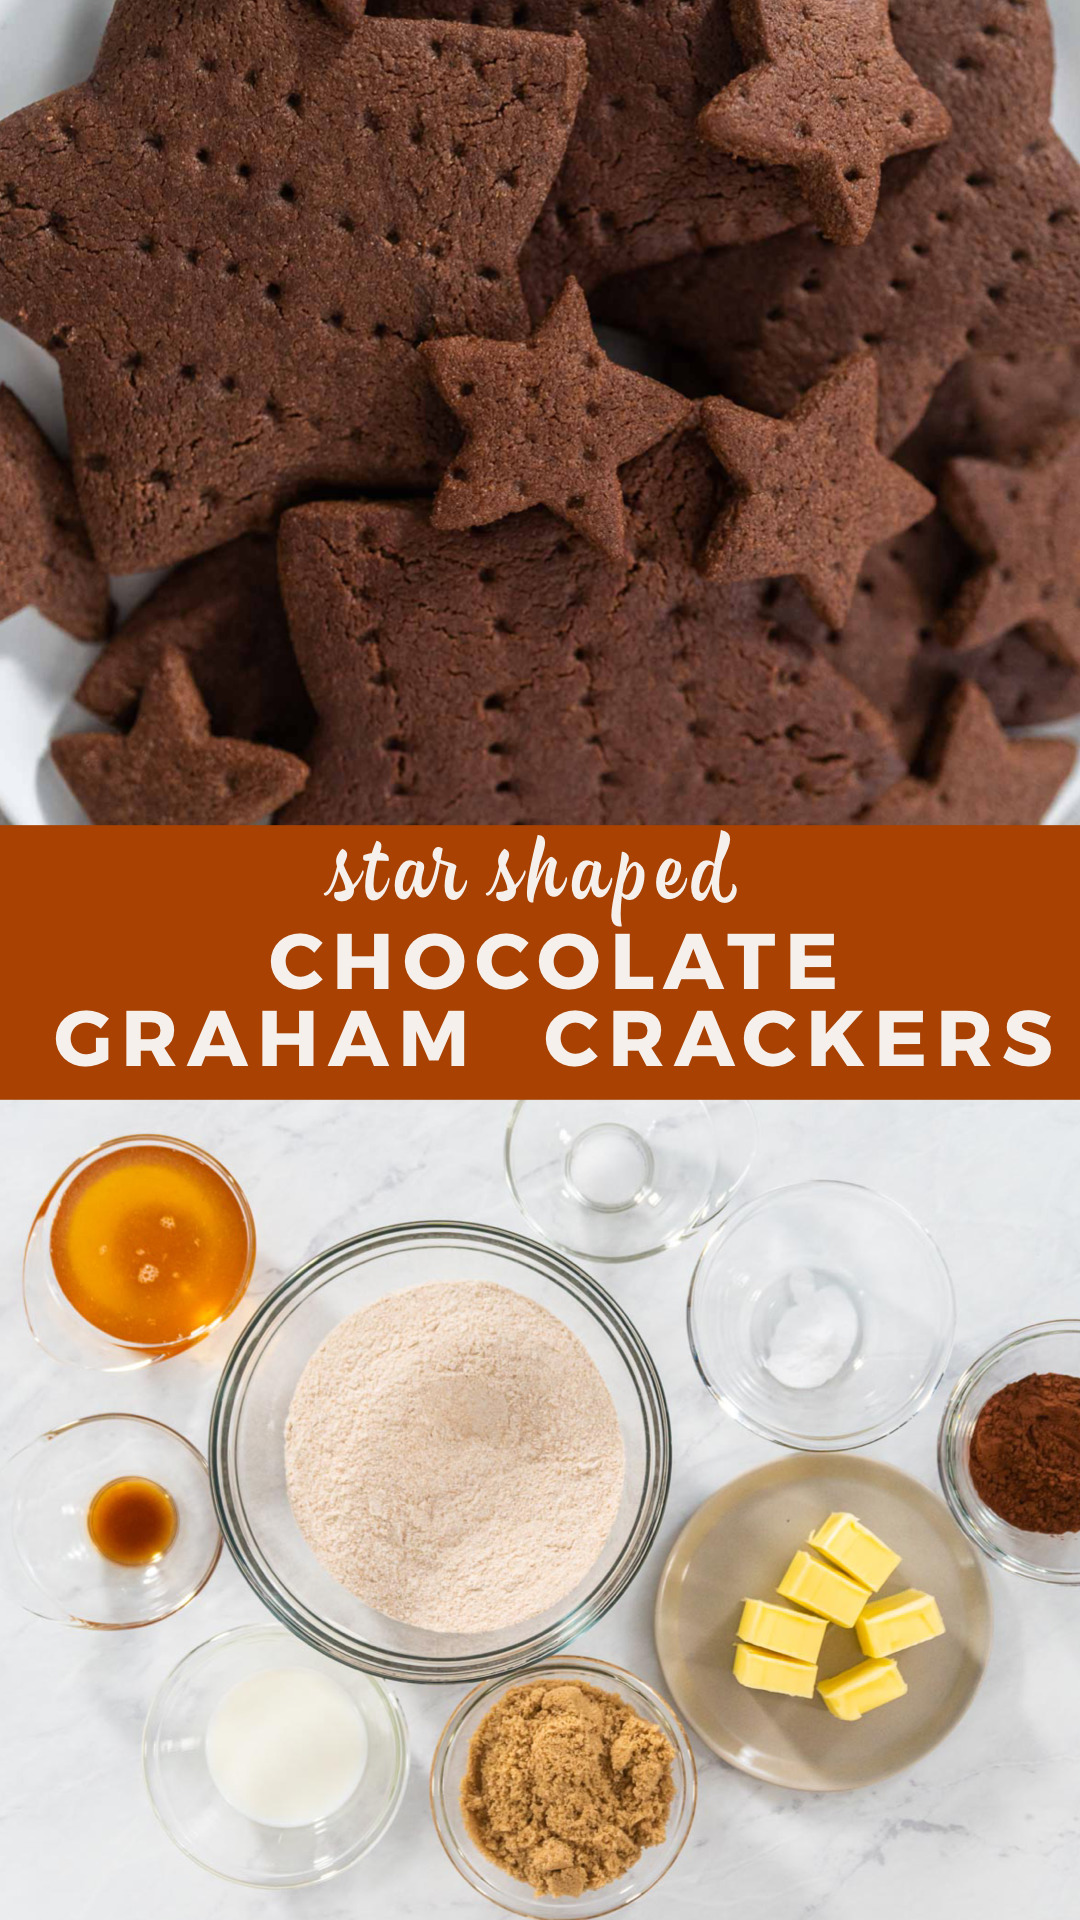 Star-shaped chocolate graham crackers